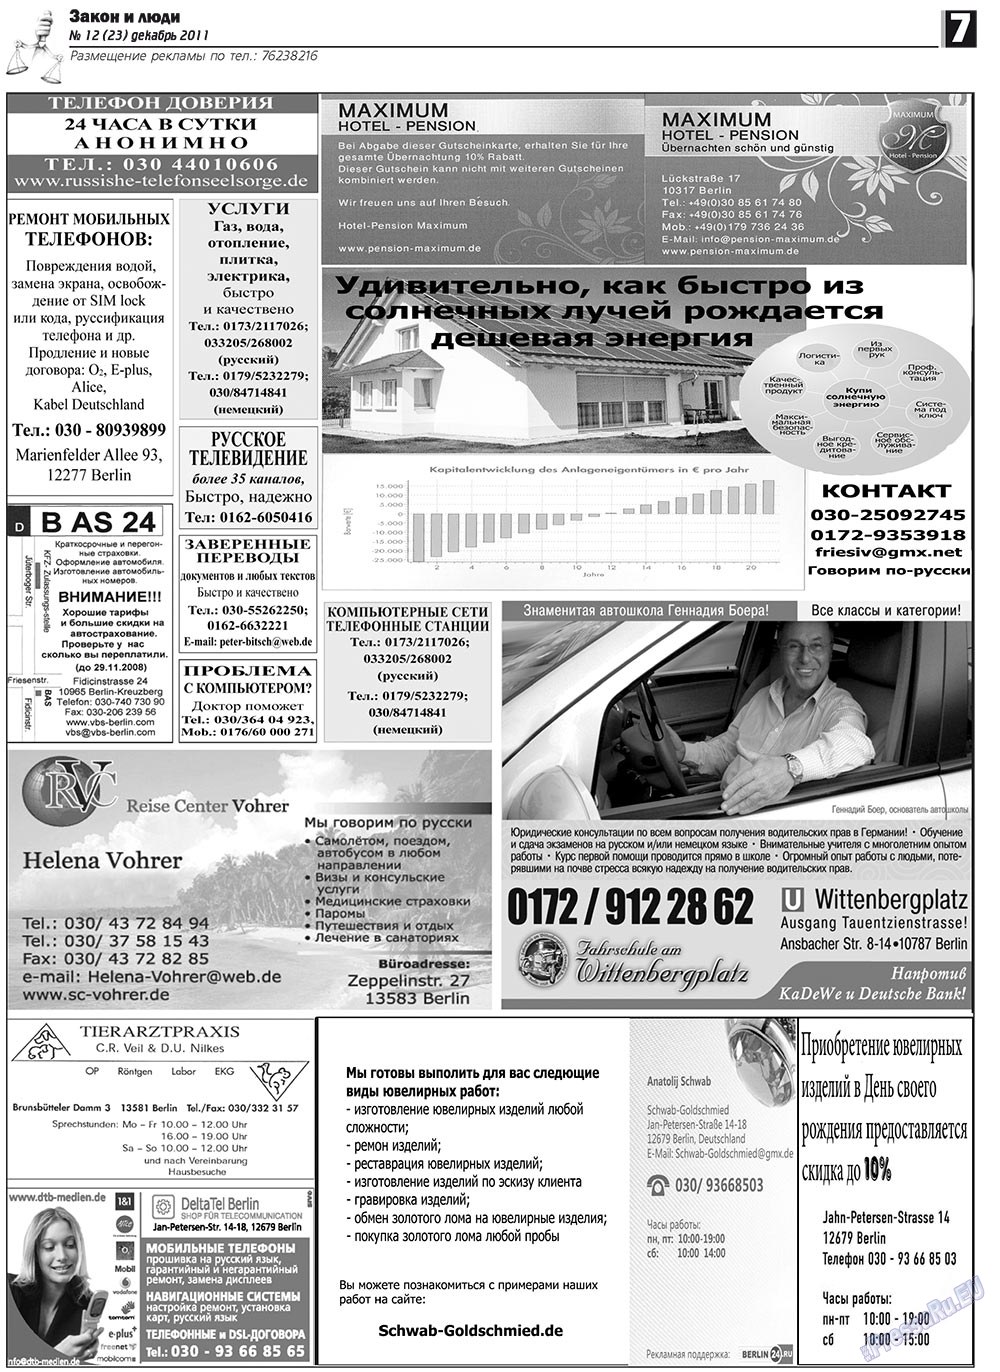 Закон и люди, газета. 2011 №12 стр.7